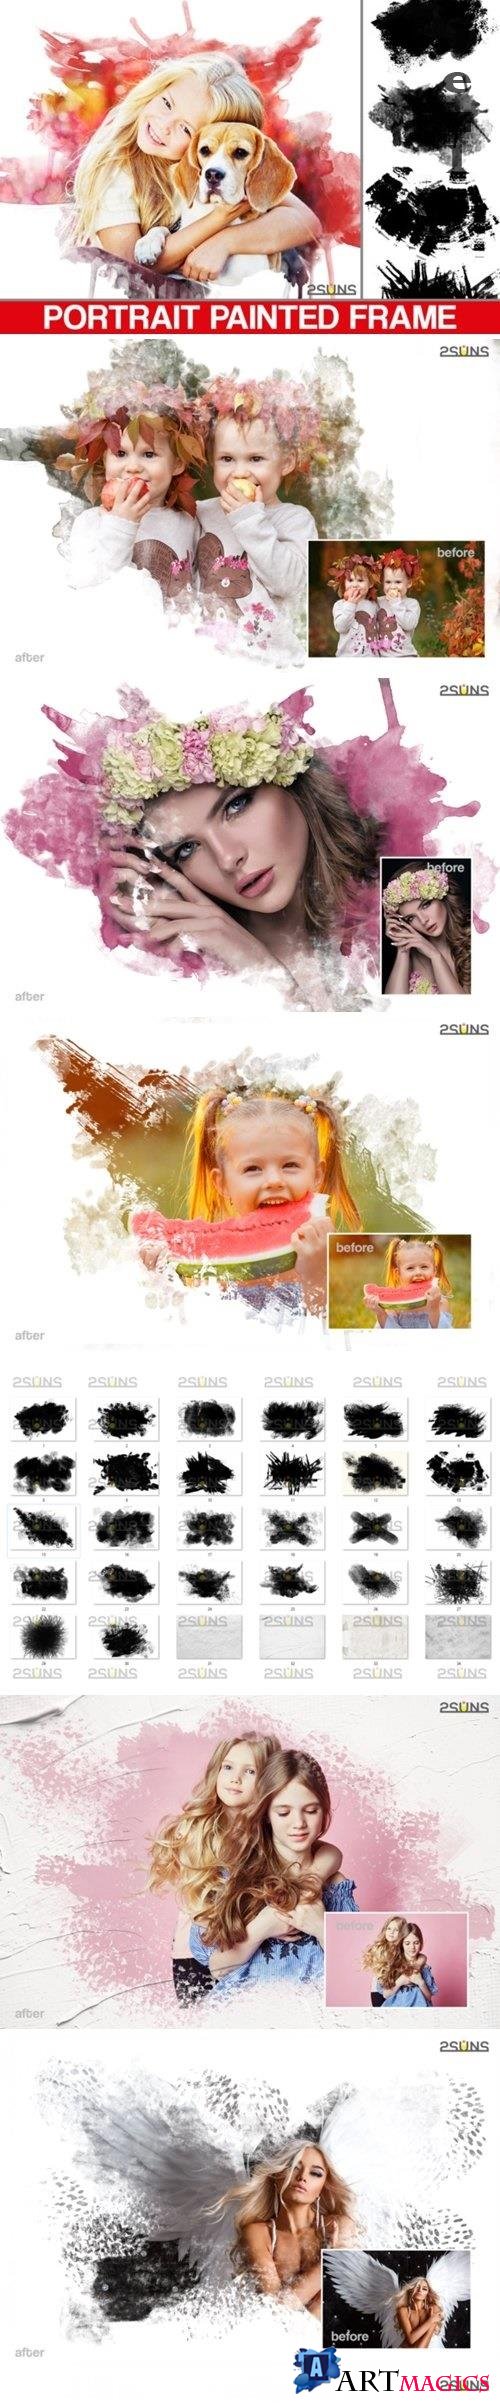 30 Beautiful portrait paint masks, photo frame, Photoshop overlay - 521253